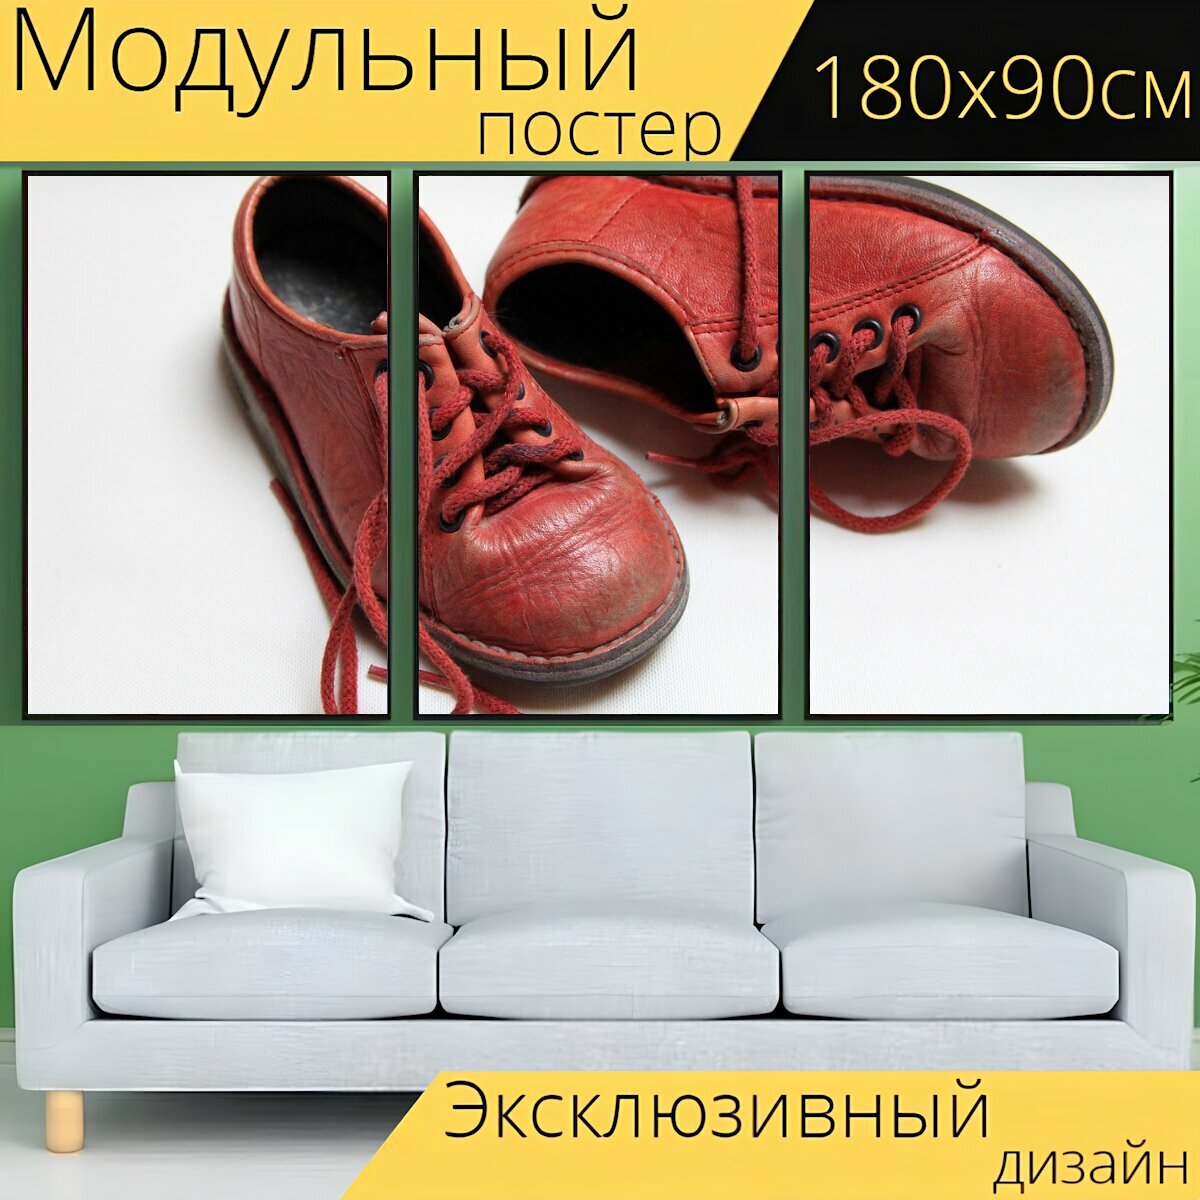 Модульный постер "Детская обувь, красные сапоги, красный" 180 x 90 см. для интерьера